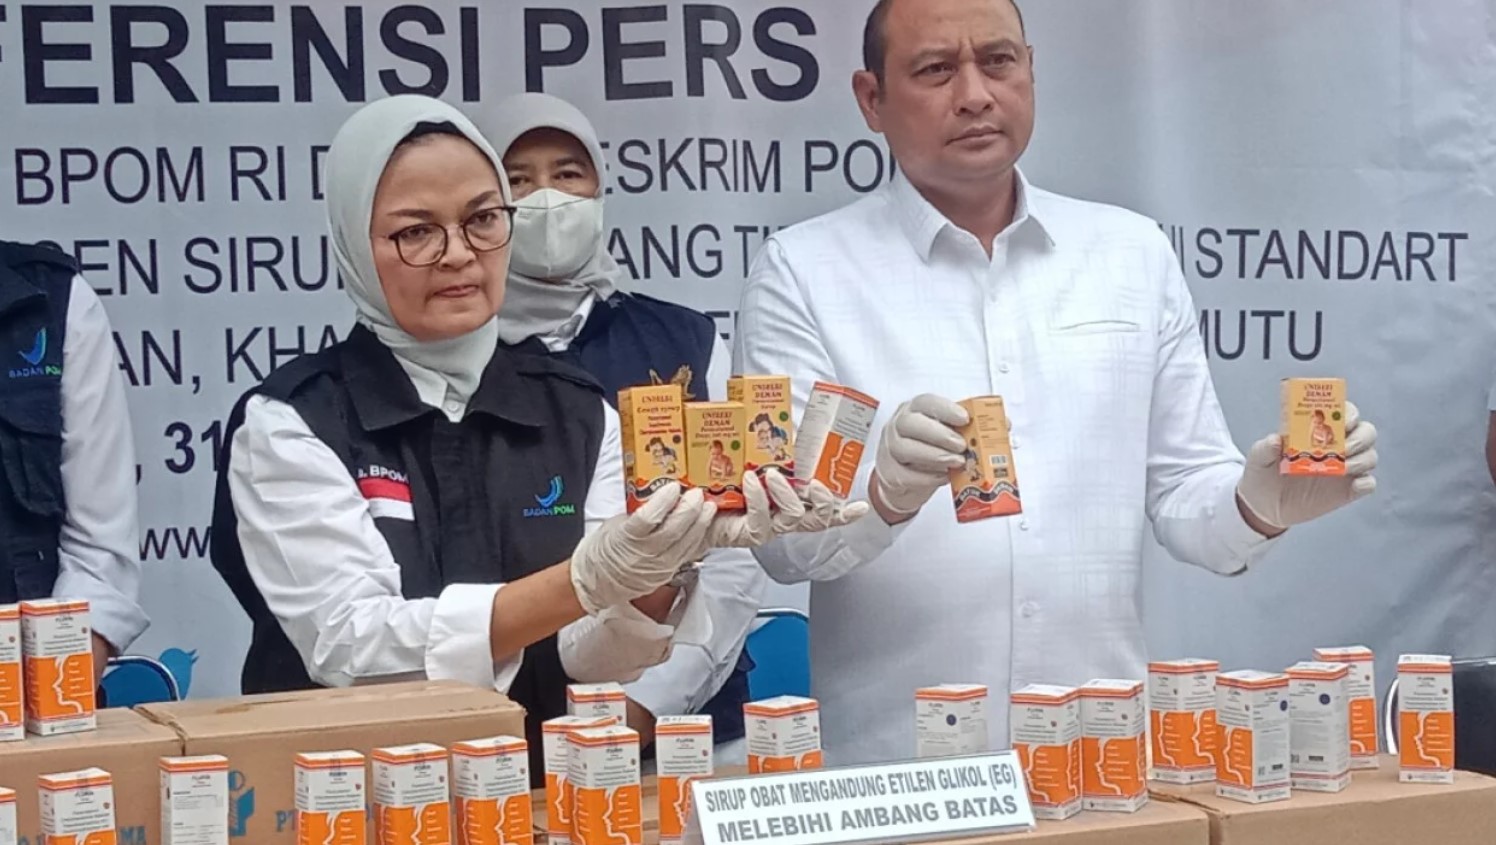 Condenan a dos años de cárcel a ejecutivos de farmacéutica en caso de jarabe para la tos mortal